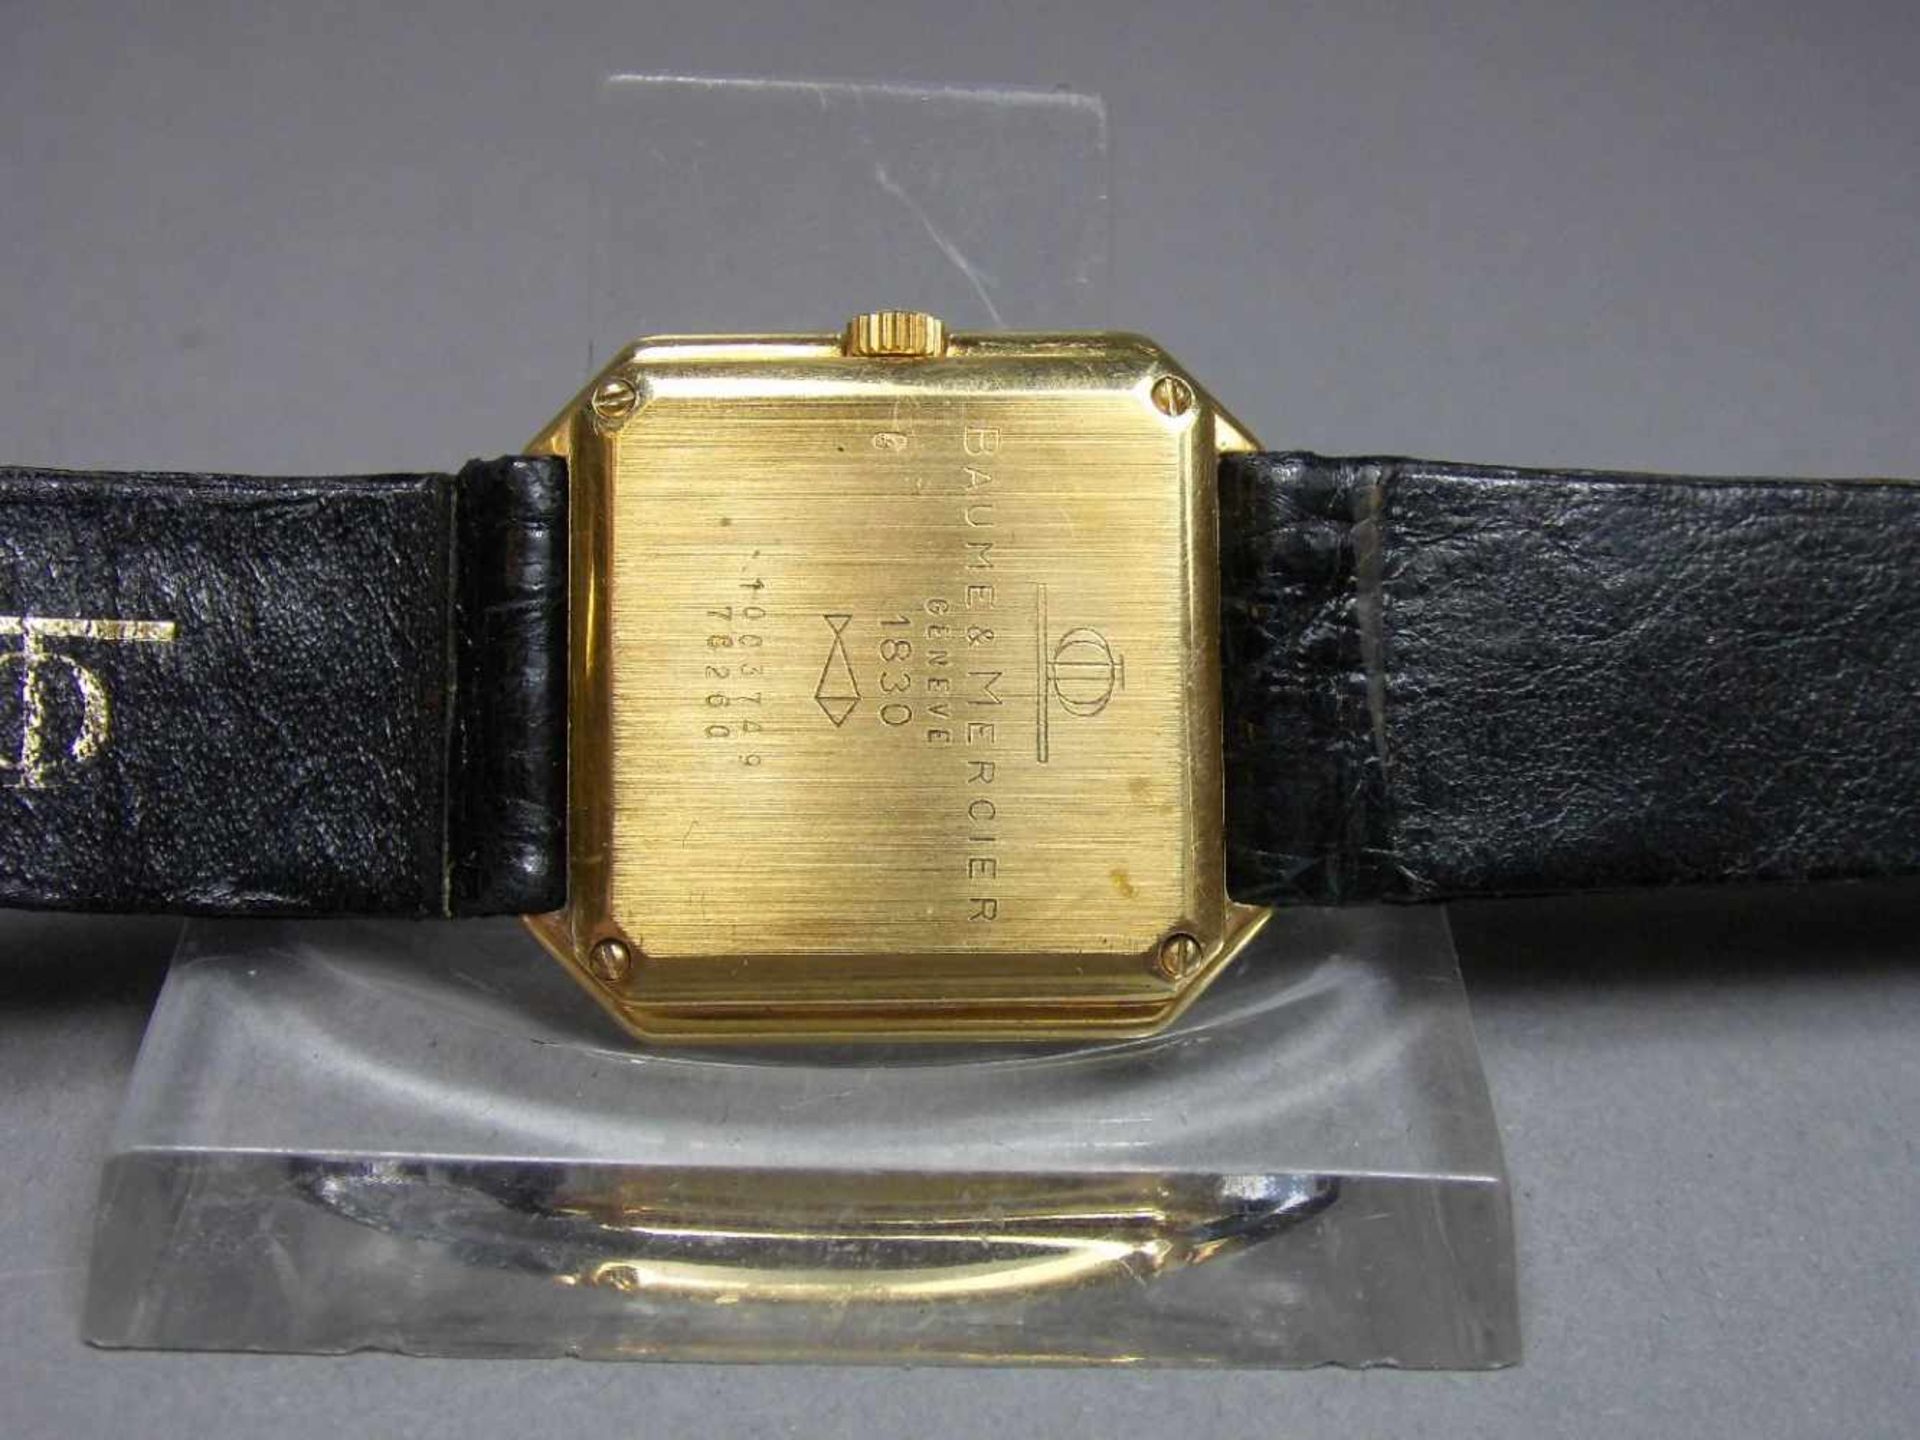 VINTAGE GOLD-ARMBANDUHR - BAUME & MERCIER GENEVE / wristwatch, 1980er Jahre, Manufaktur Baume & - Image 6 of 6